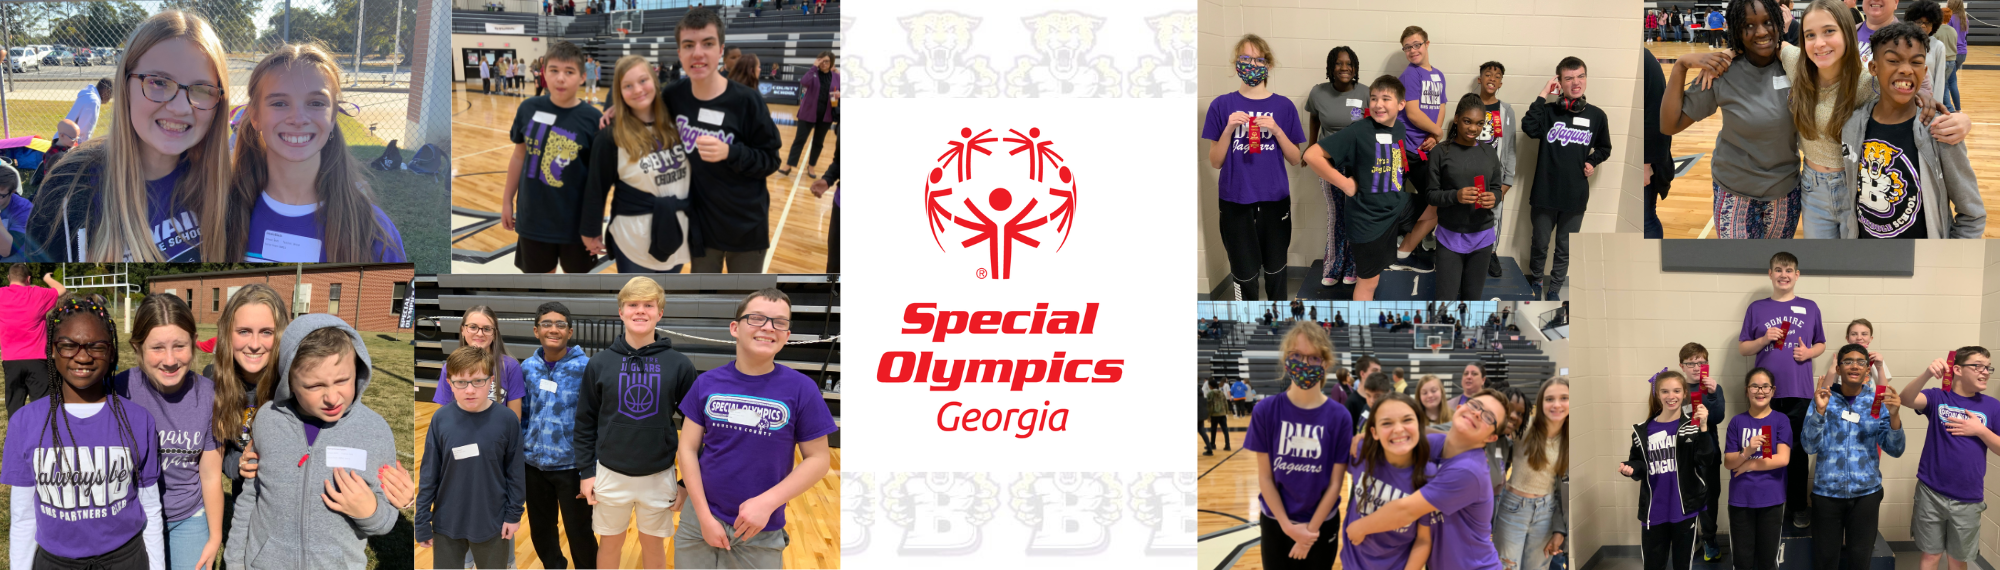 Special Olympics Georgia photos